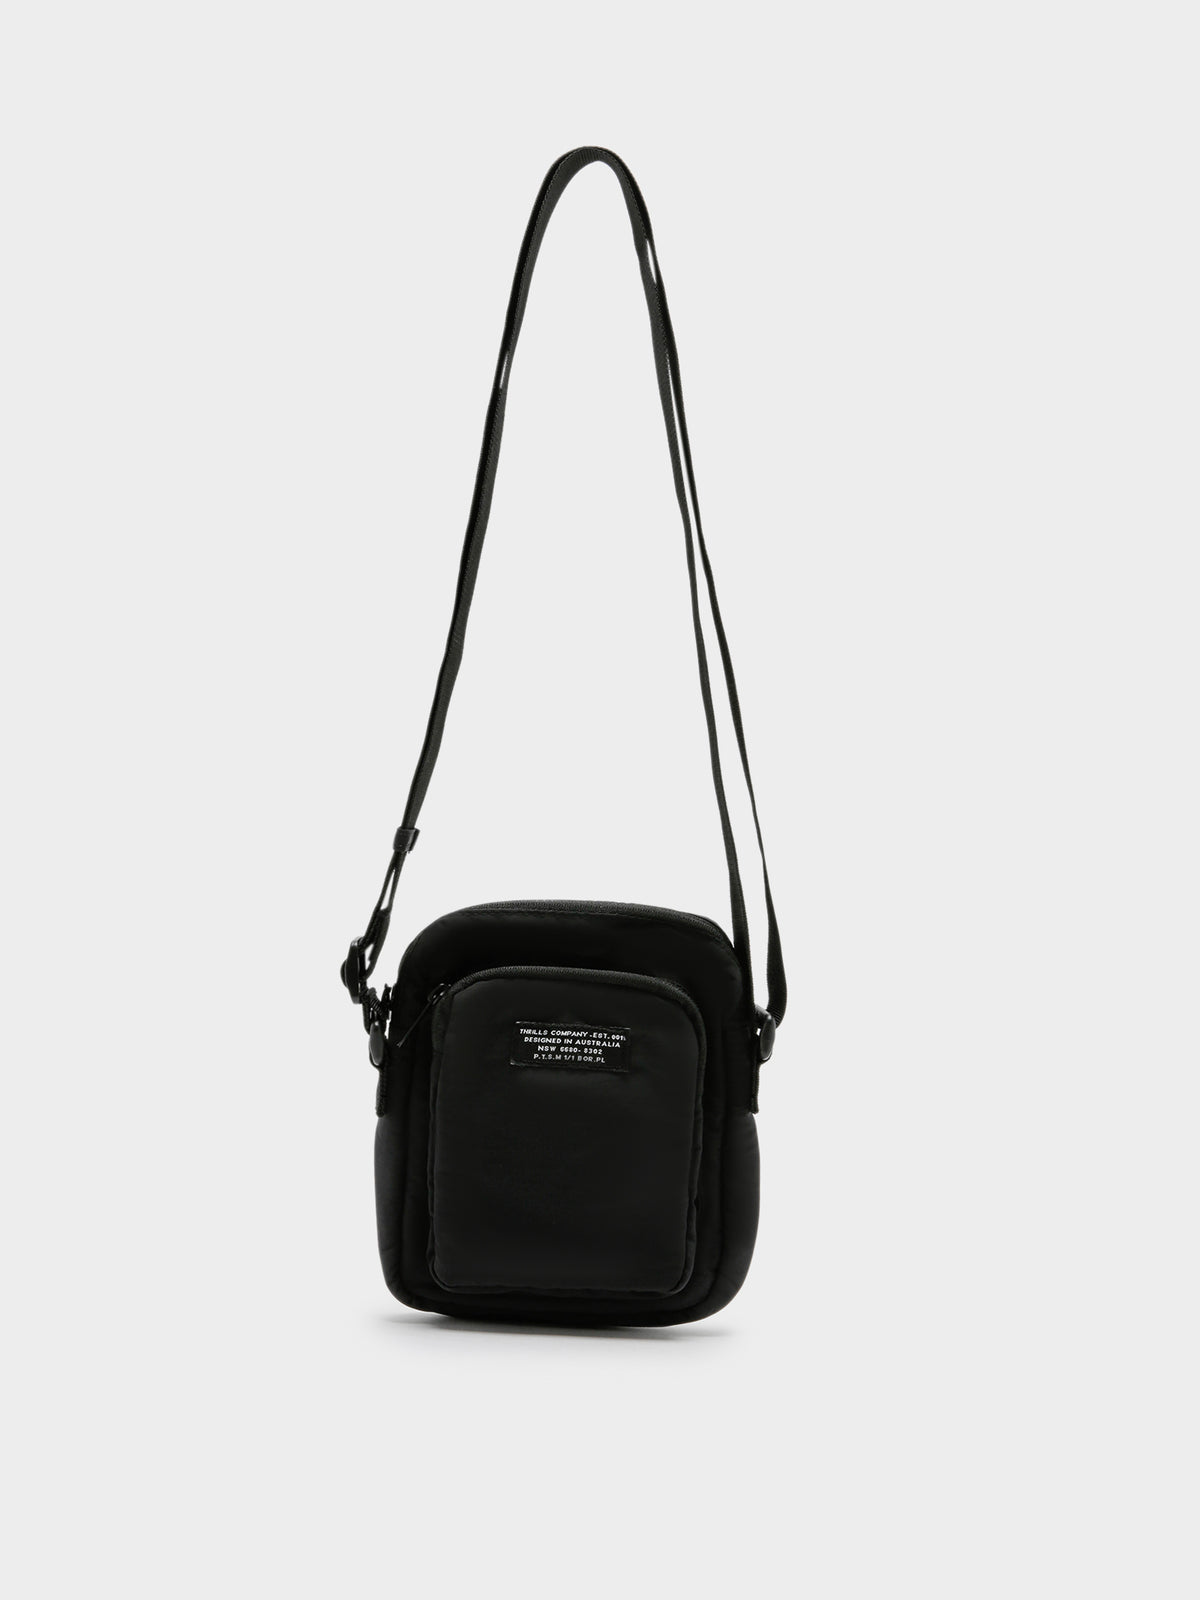 Century Shoulder Patch Bag in Black